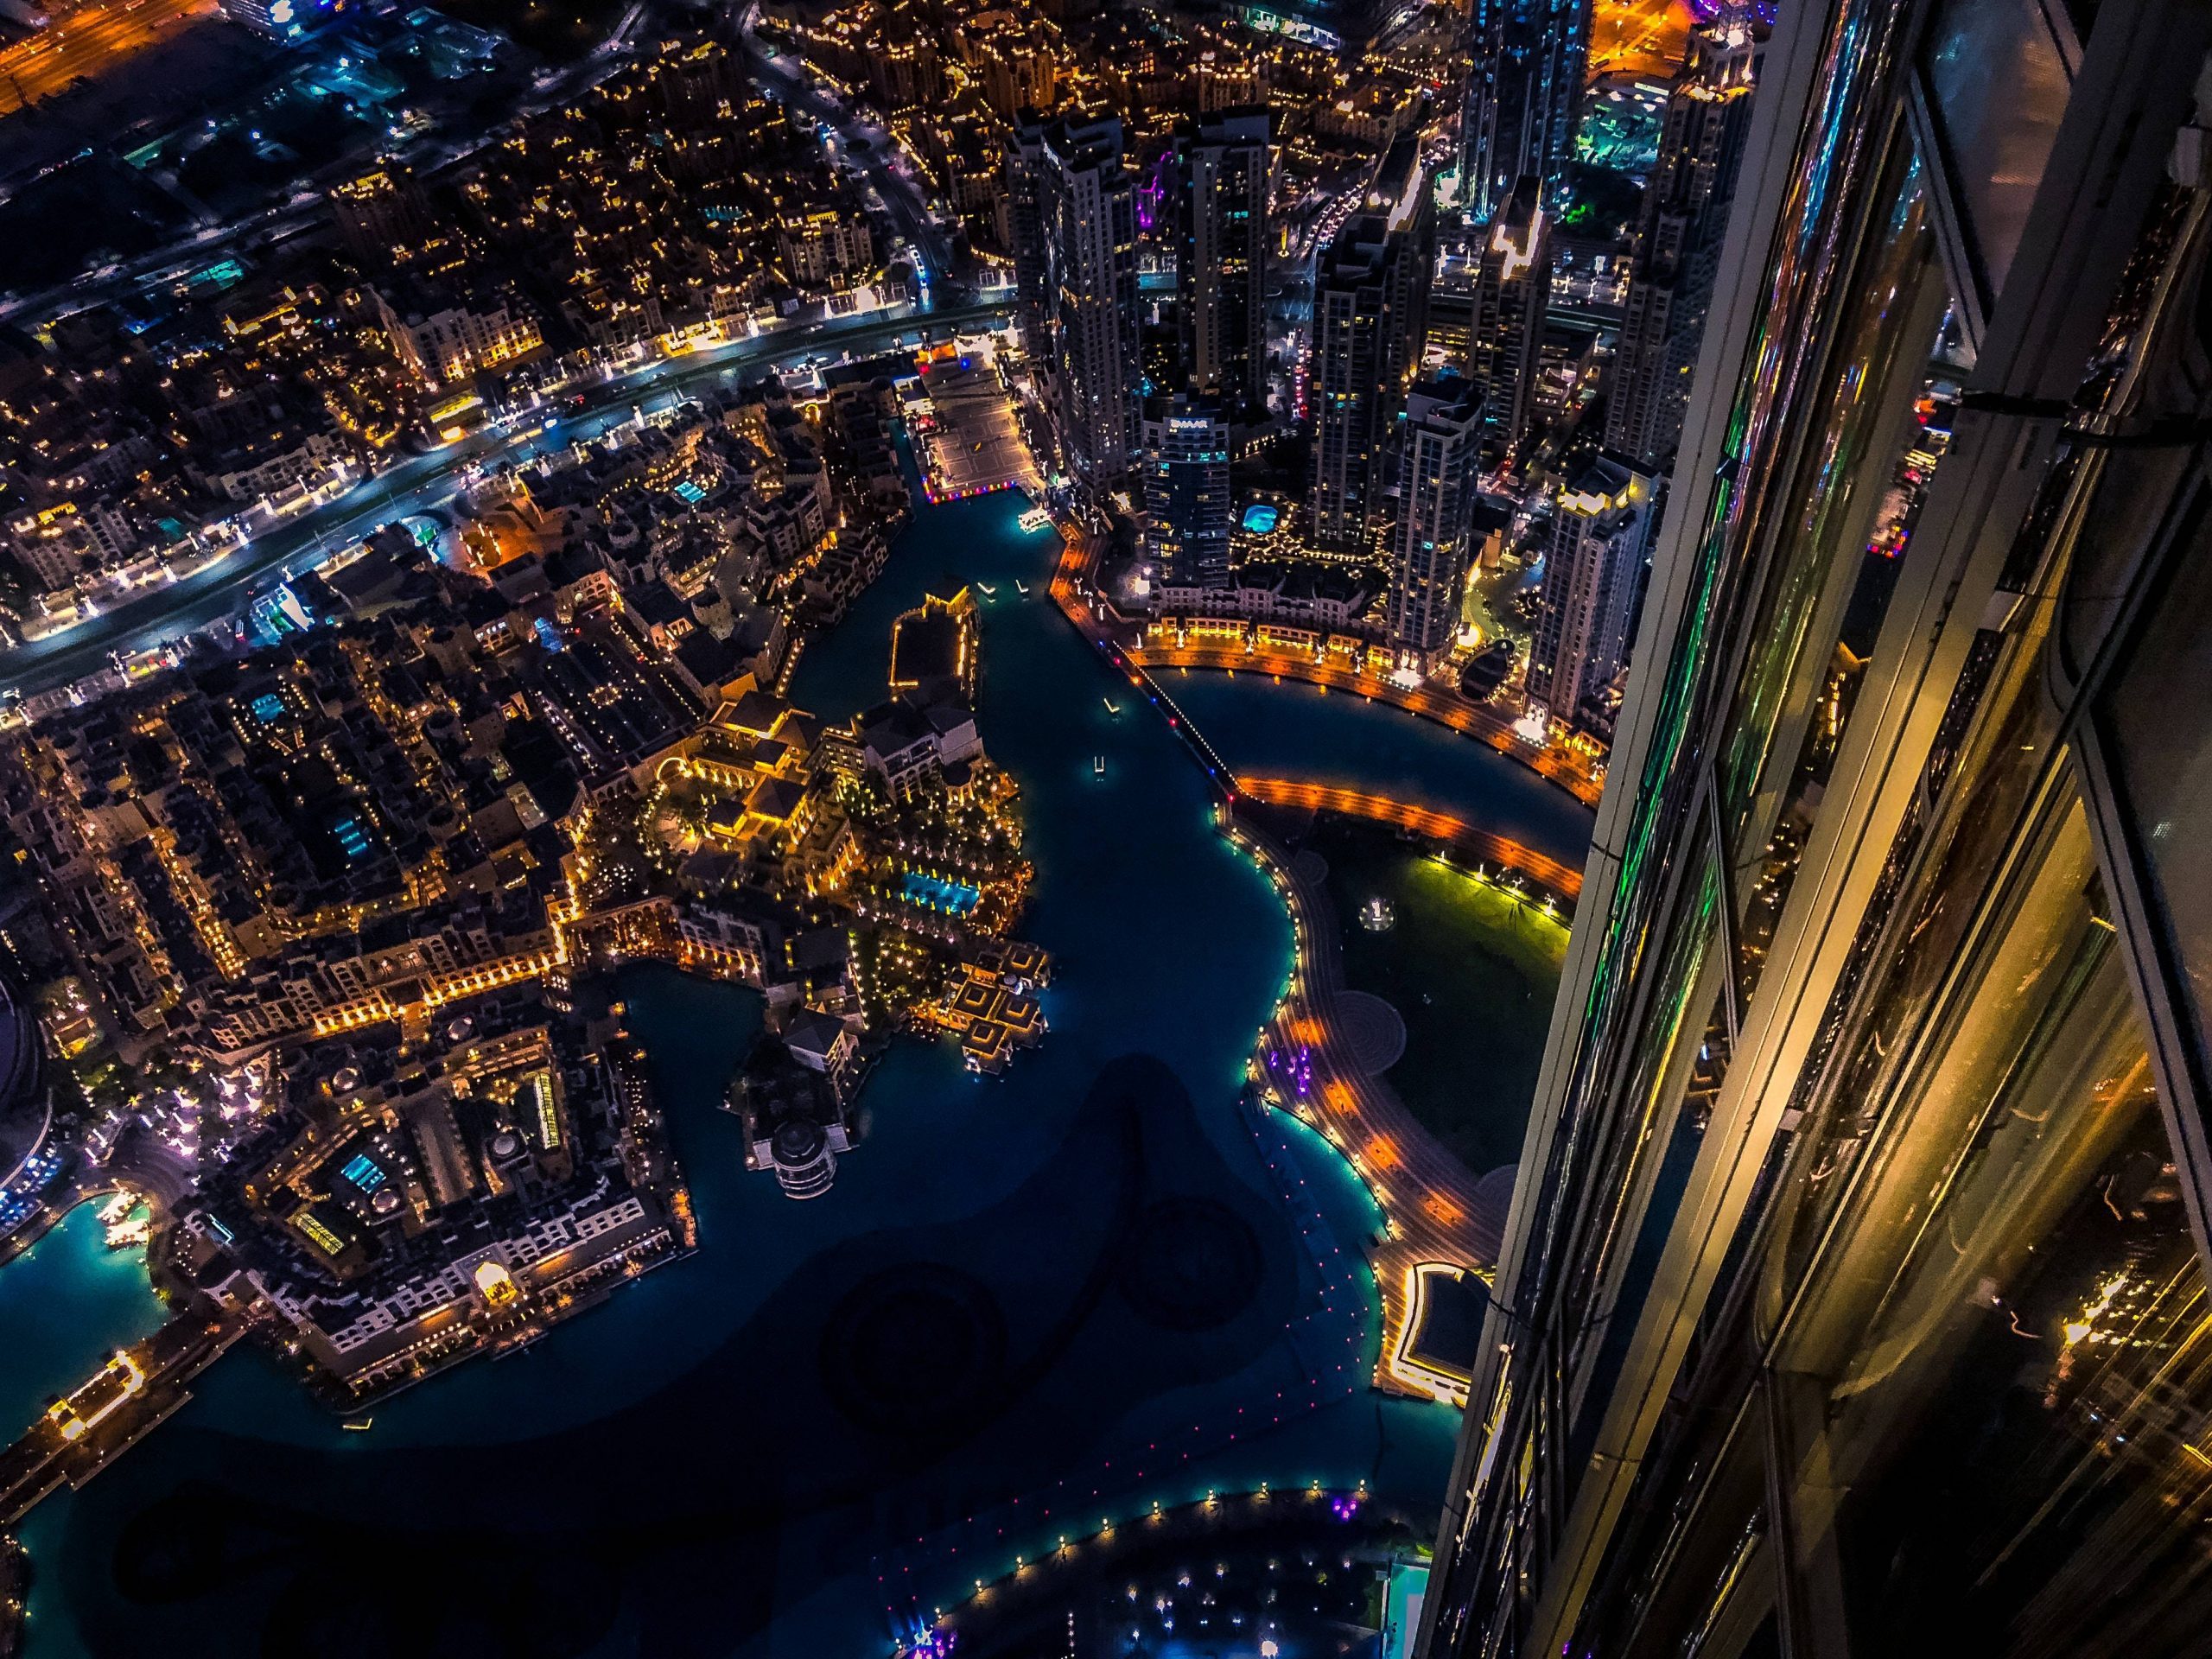 El Ministerio de Dubai presenta una nueva dirección virtual en el metaverso para permitir la venta legal